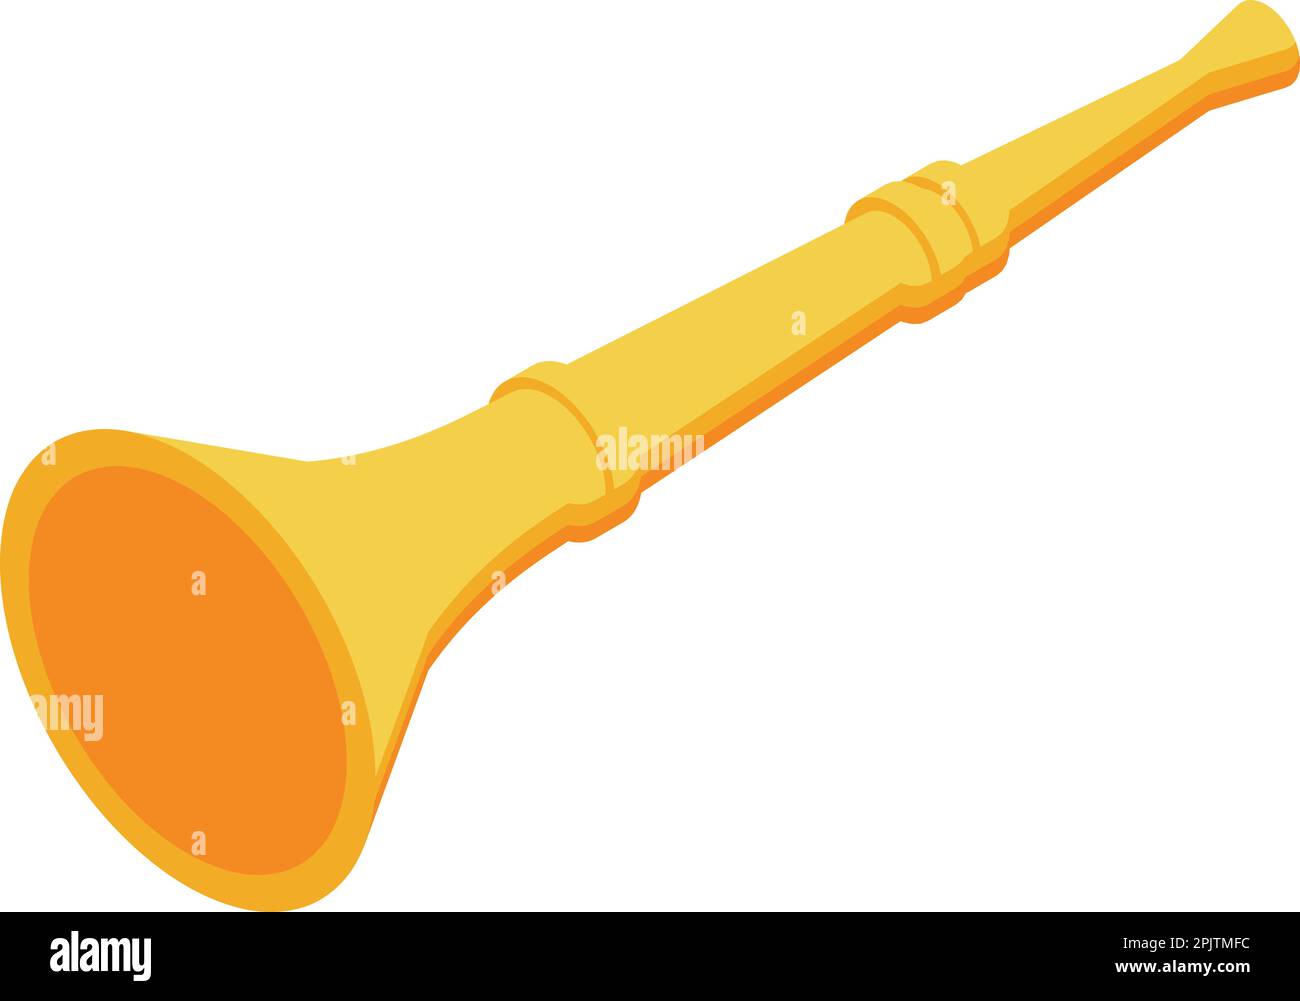 https://c8.alamy.com/comp/2PJTMFC/gold-vuvuzela-icon-isometric-vector-soccer-horn-africa-sound-2PJTMFC.jpg